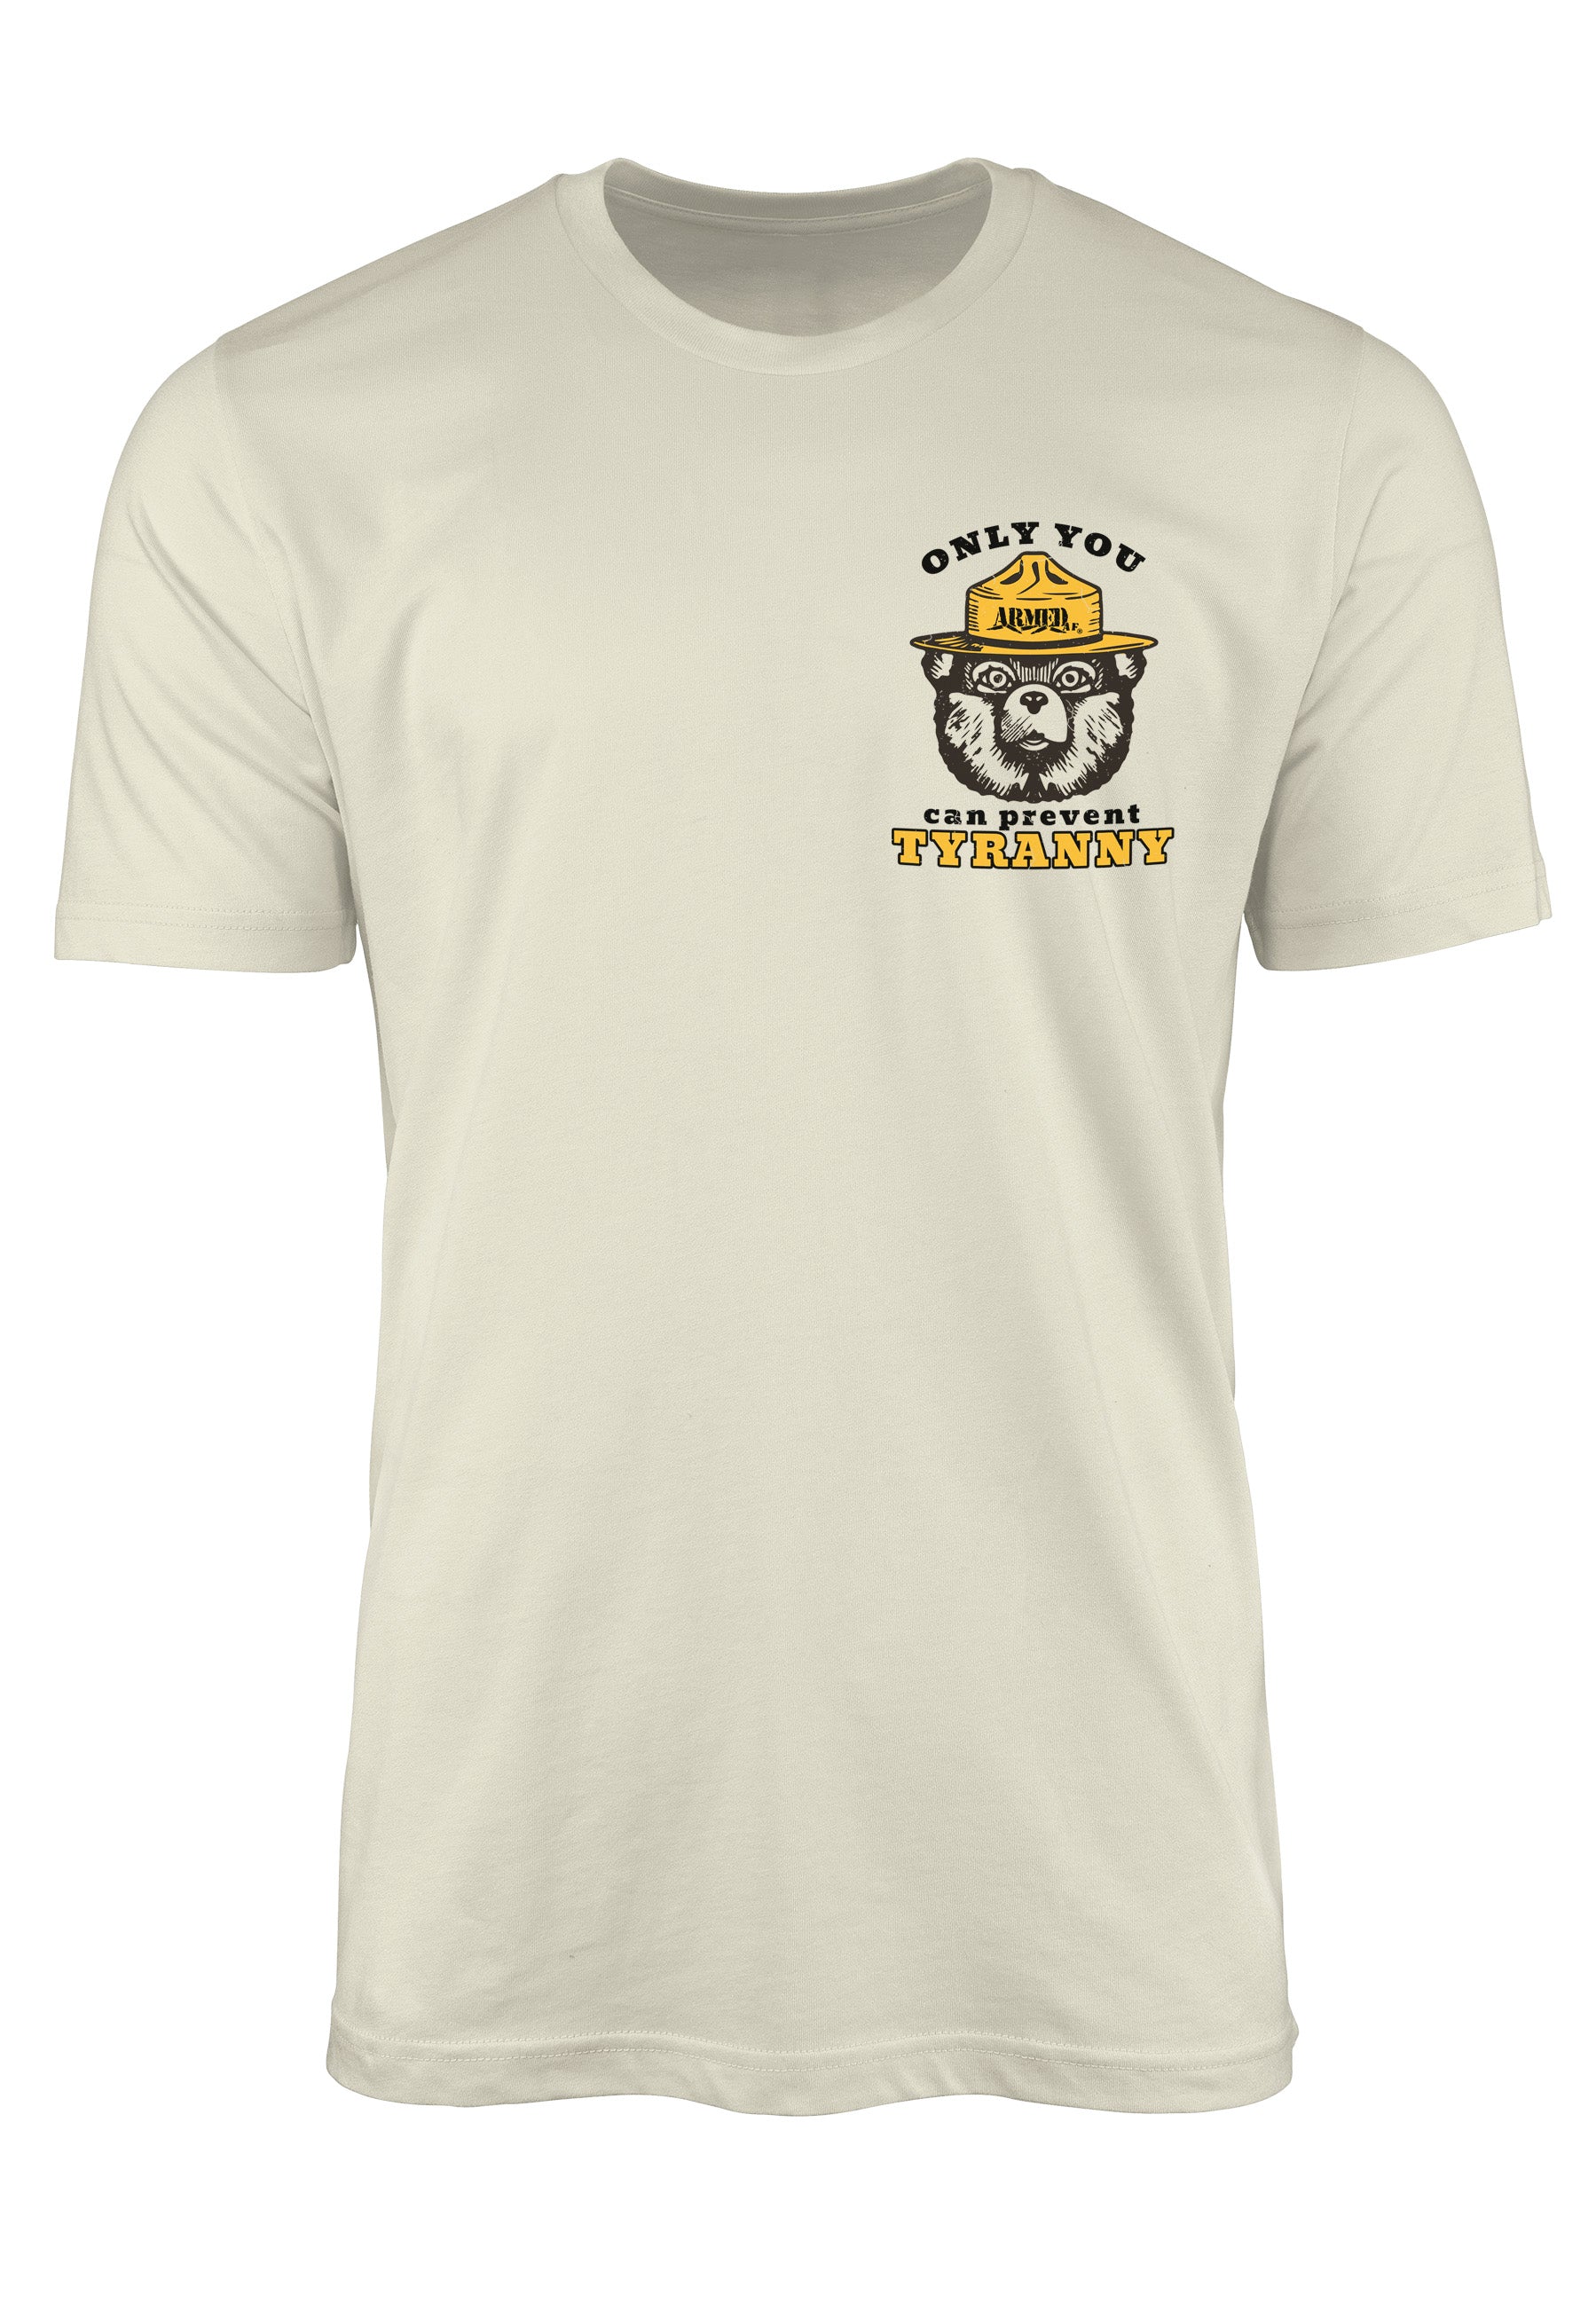 Smokey Bear chest print on ArmedAF® tshirt